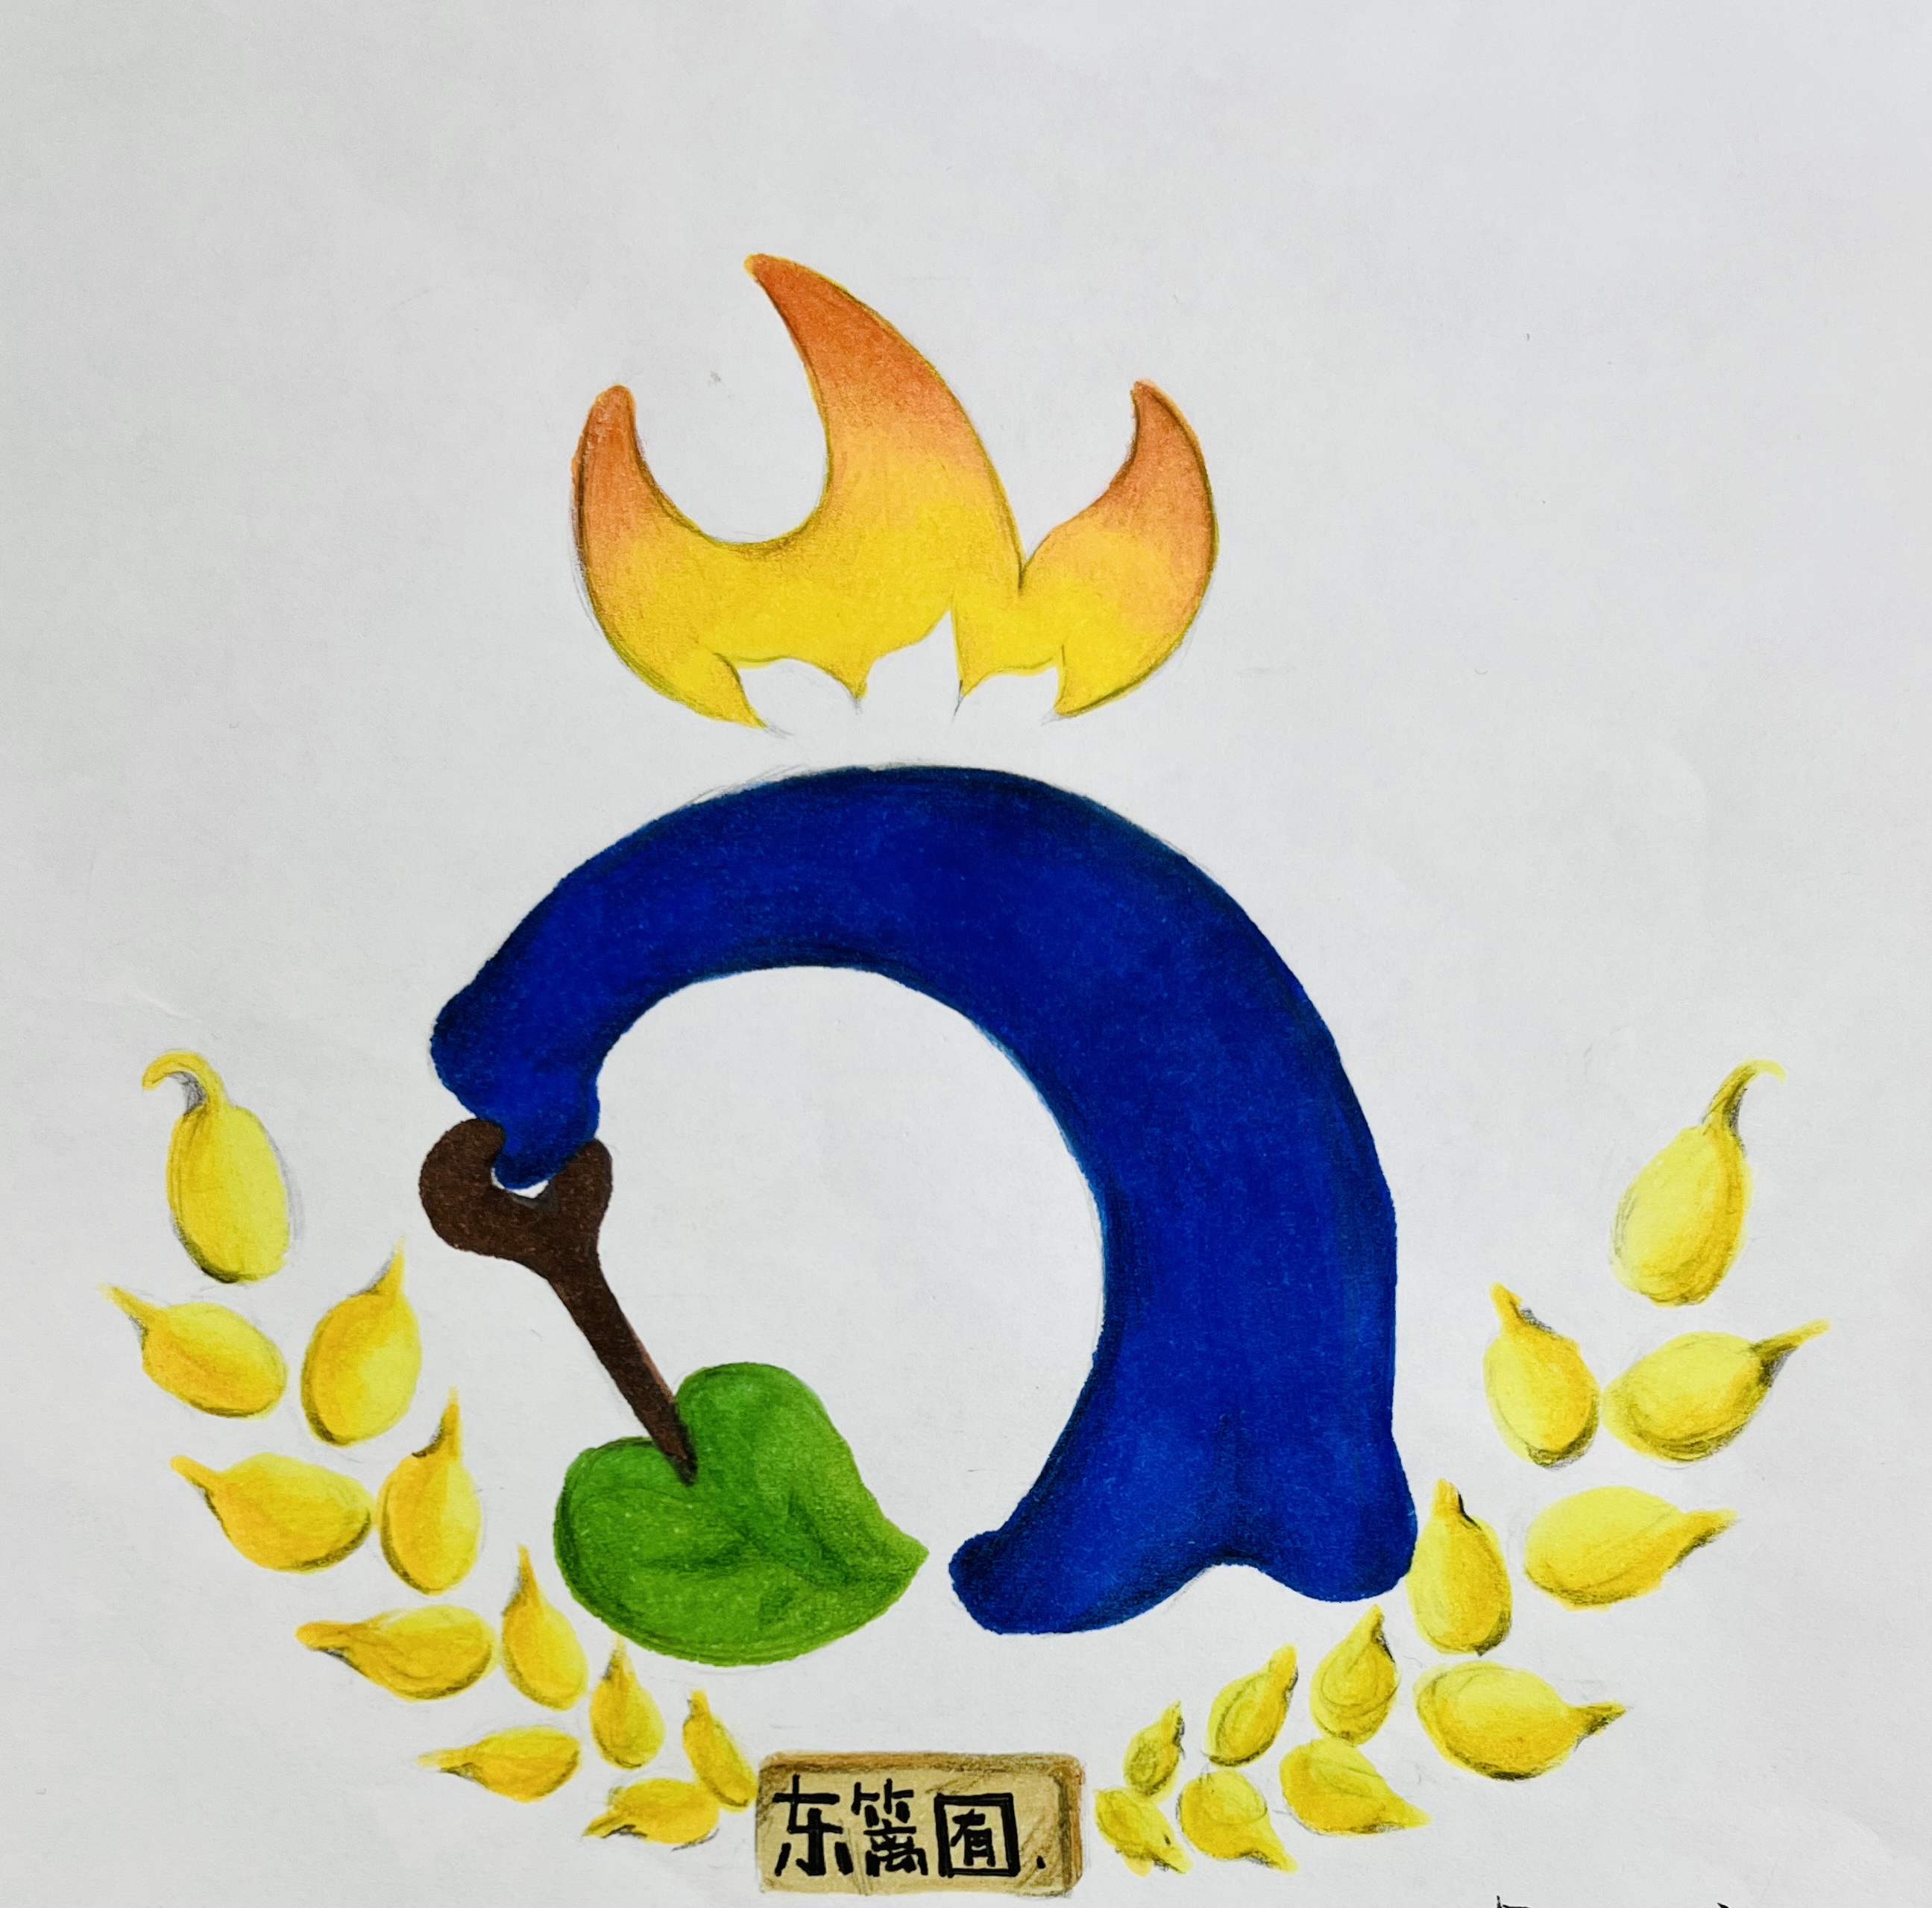 劳动教育logo设计理念图片